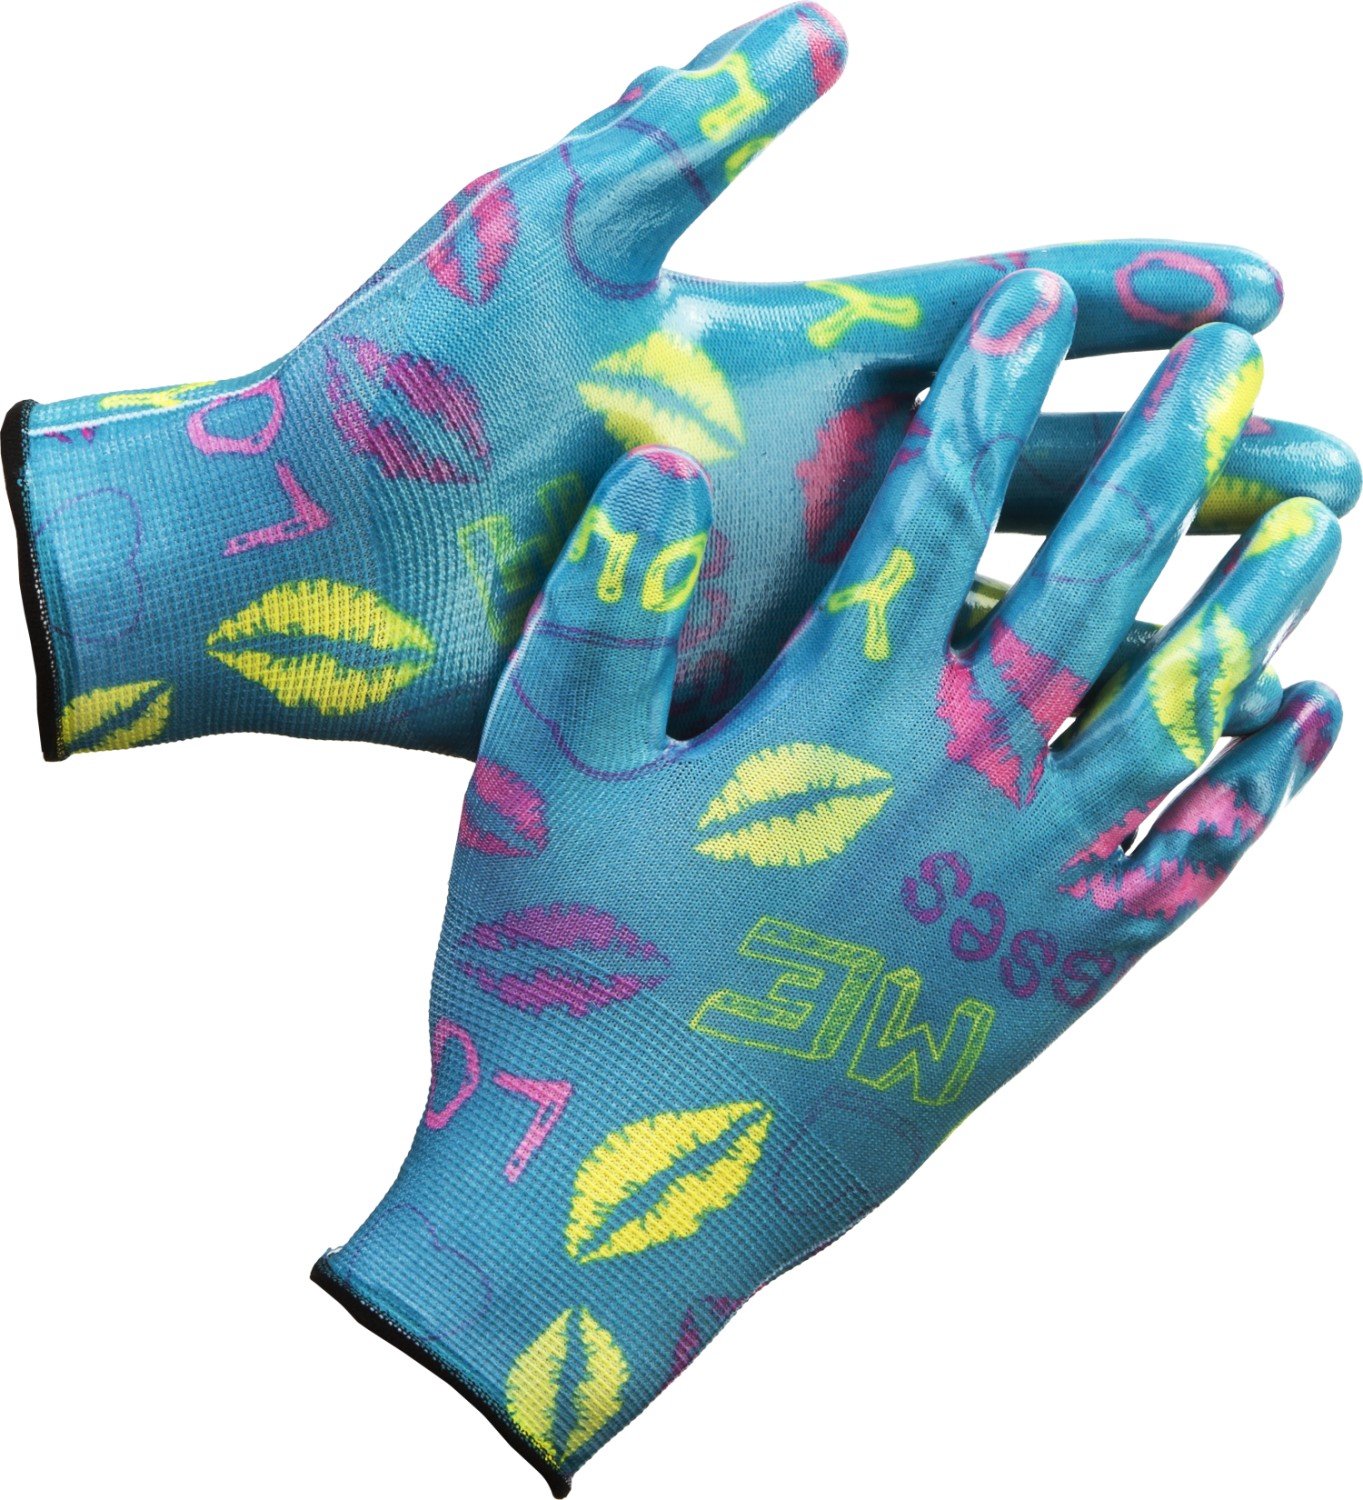 Садовые перчатки GRINDA р. L-XL прозрачное нитриловое покрытие синие (11296-XL)Купить